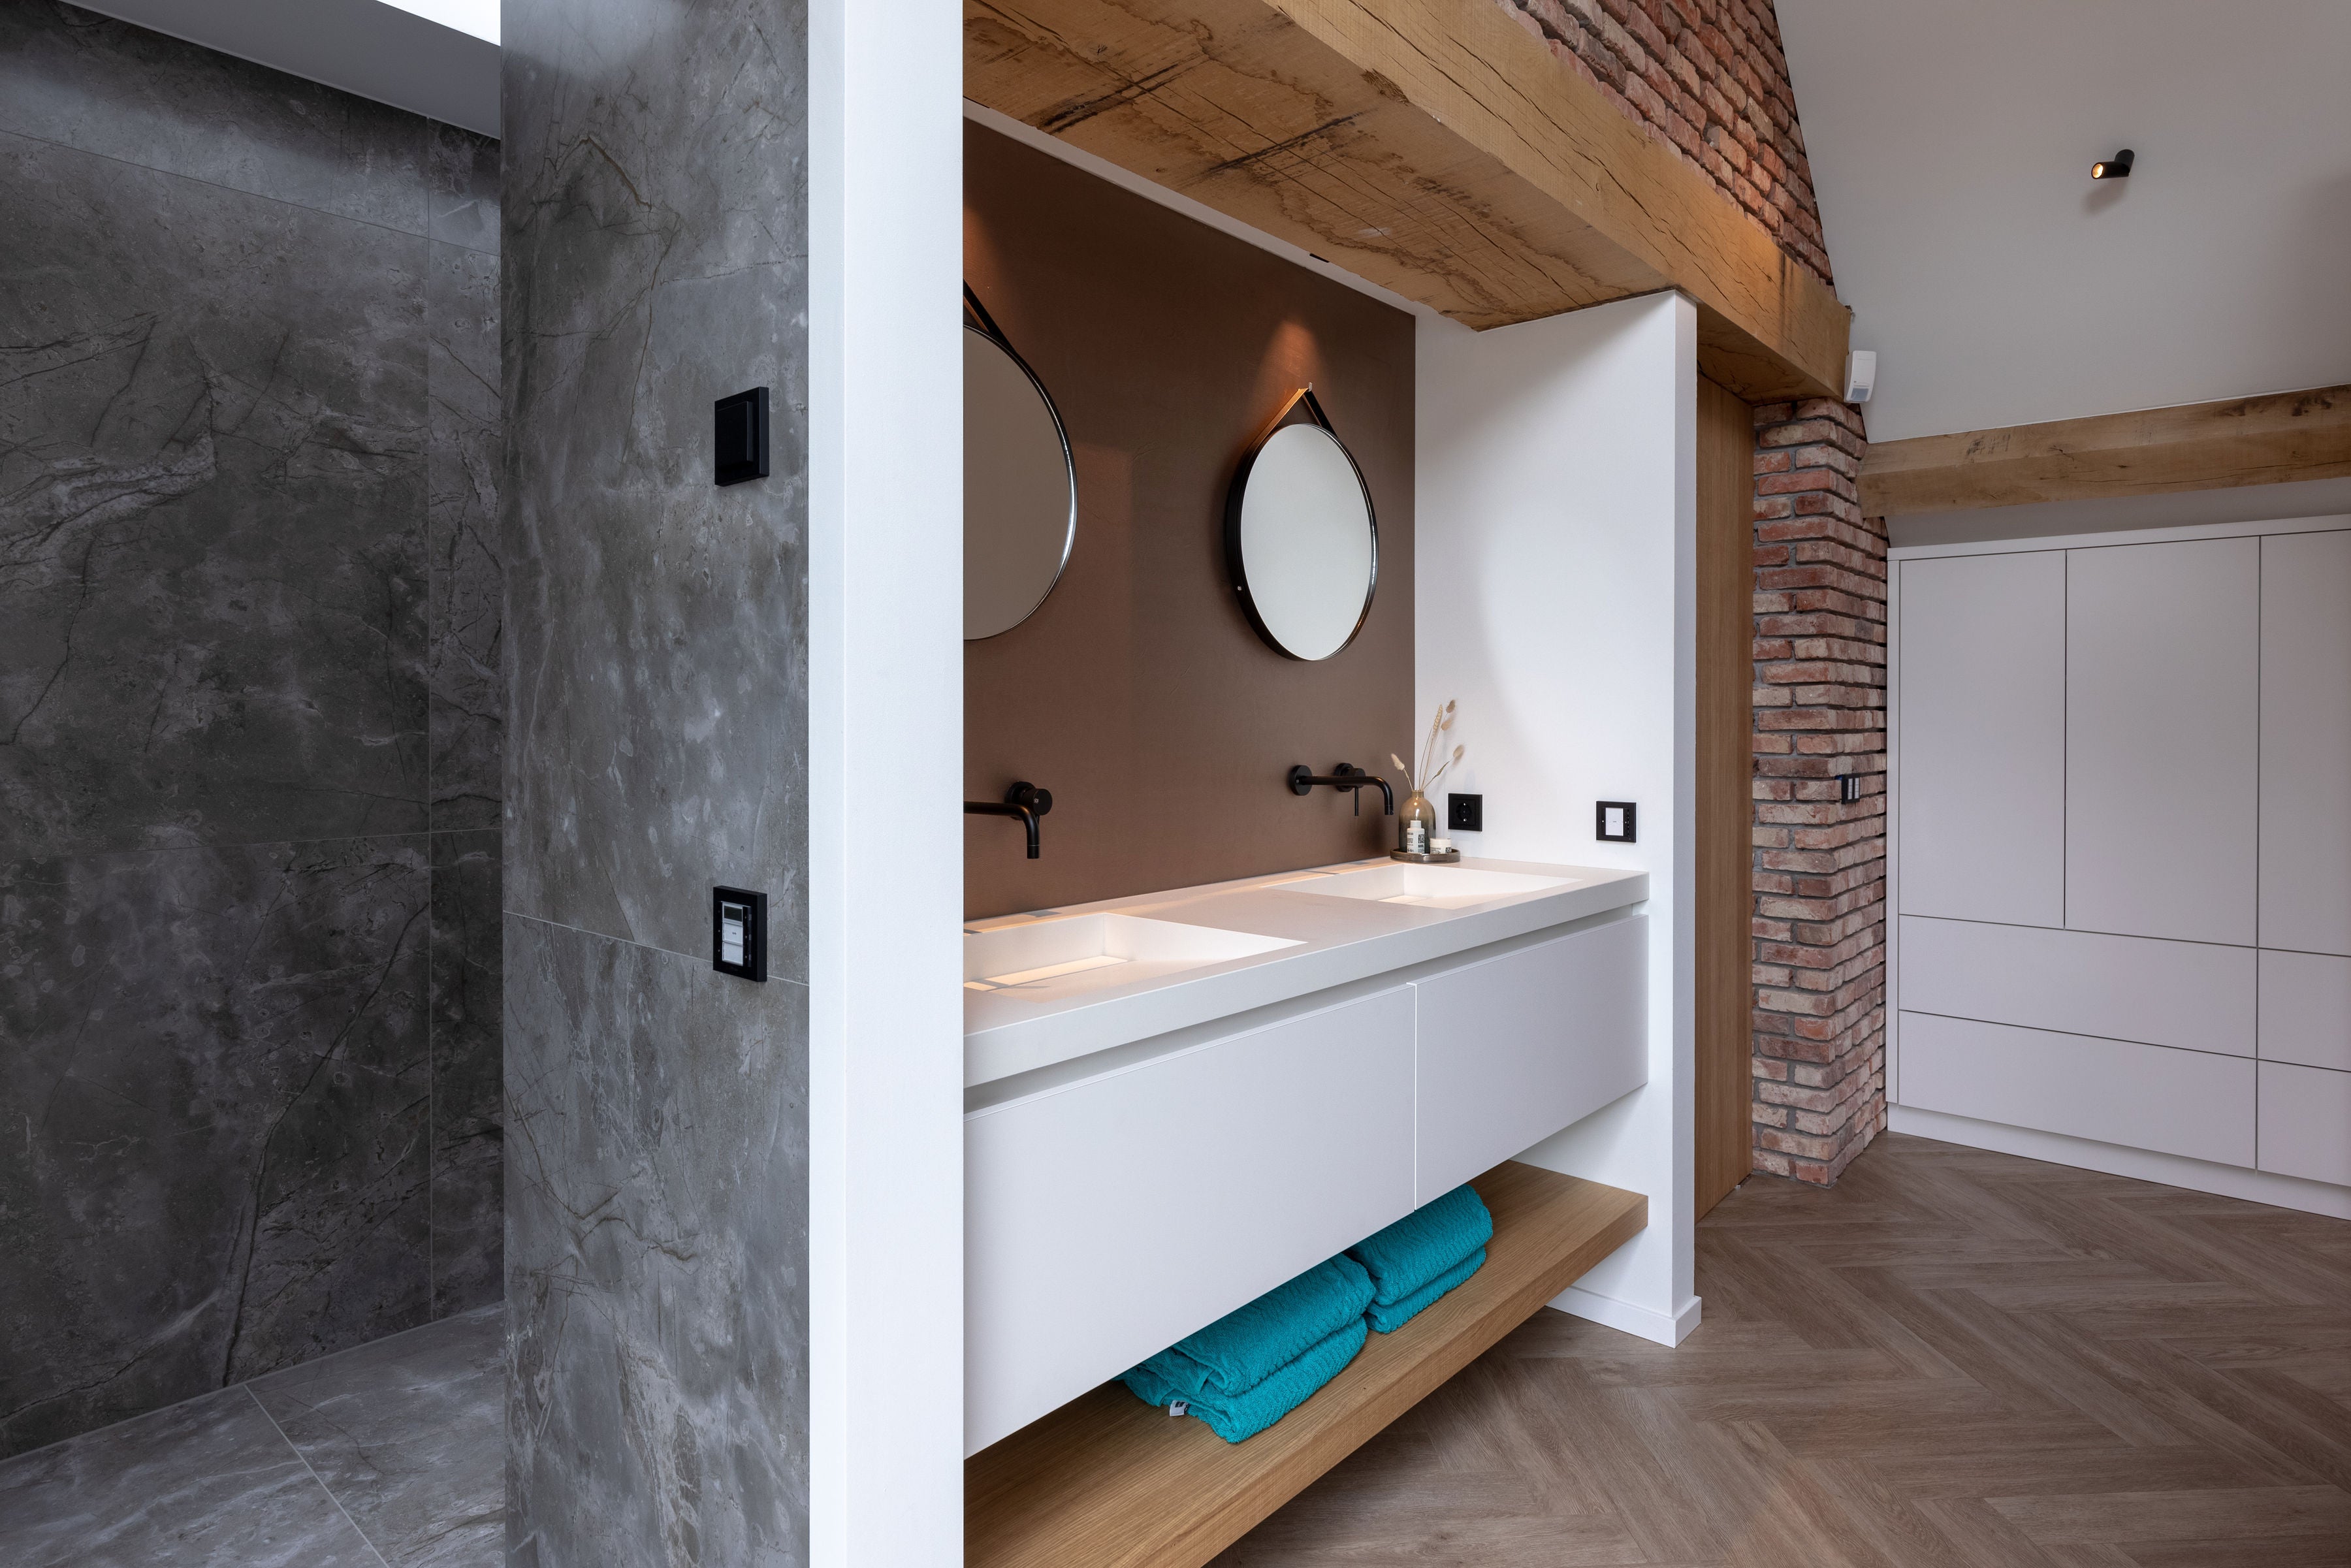 Querkus - oak - oak adagio - veneer floor - wood floor - wooden floor bathroom - bathroom